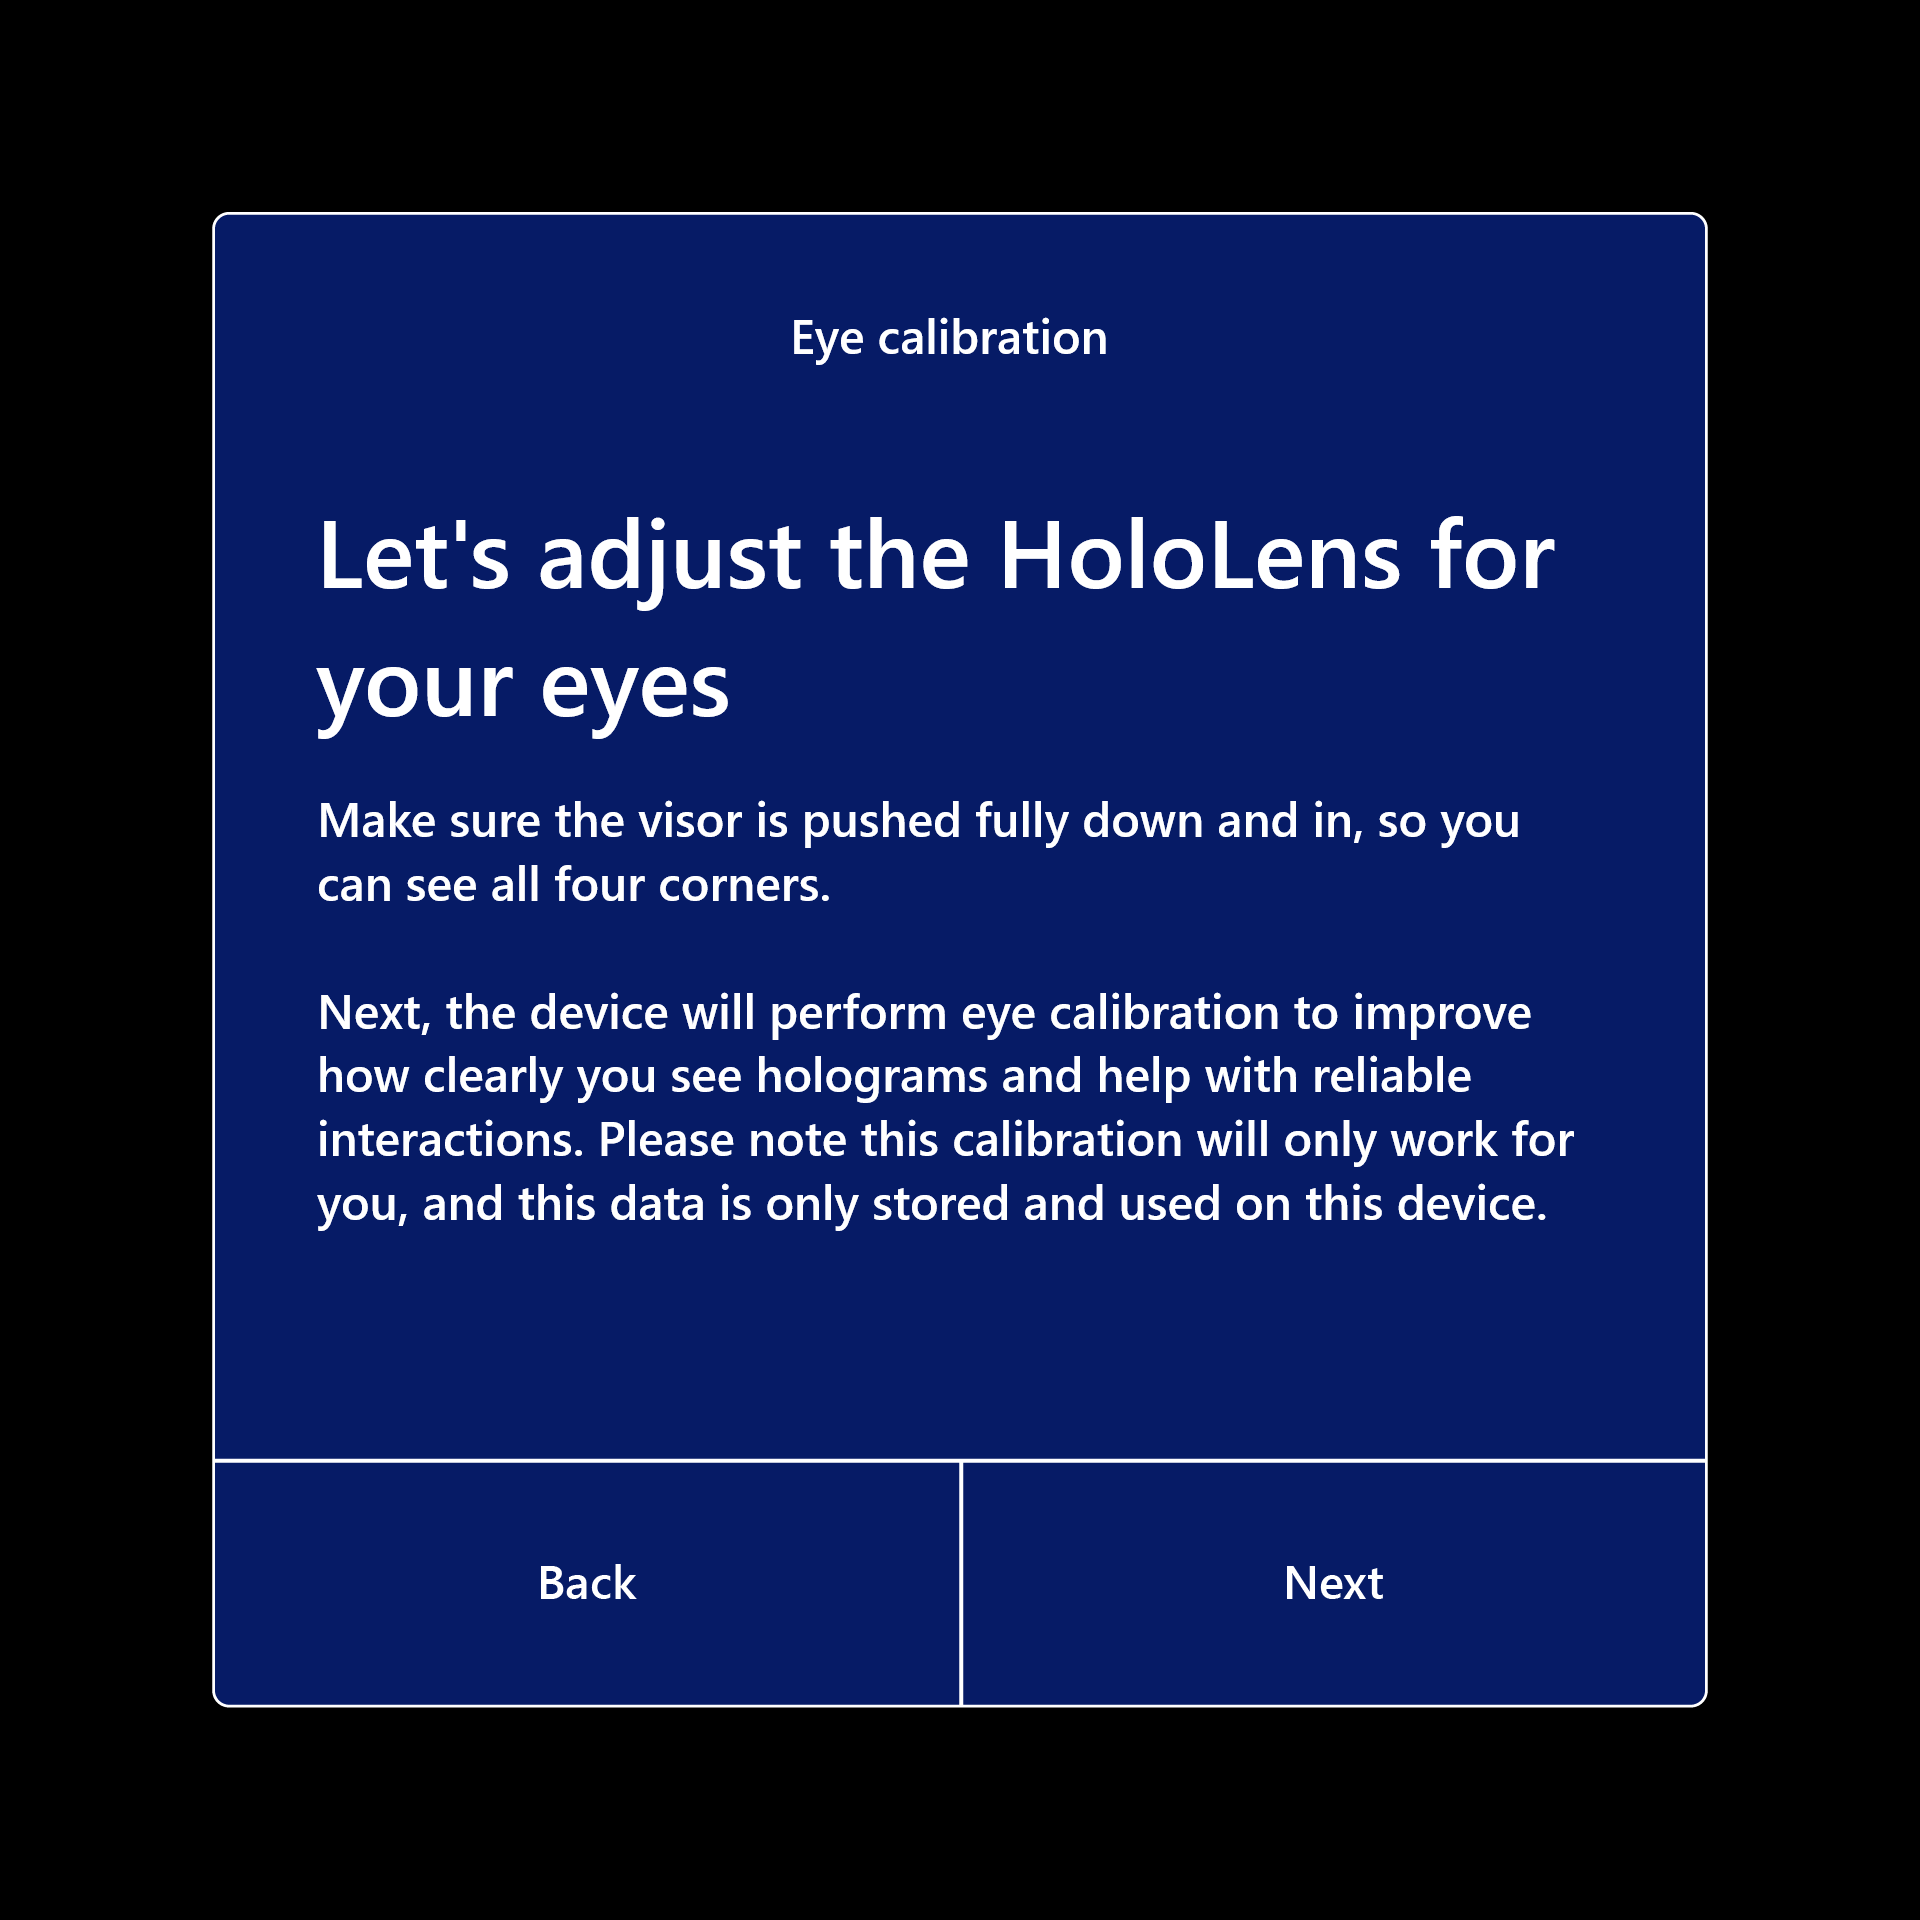 Bitte passen Sie die HoloLens für Ihre Augen an, damit die Kalibrierung fortgesetzt werden kann.